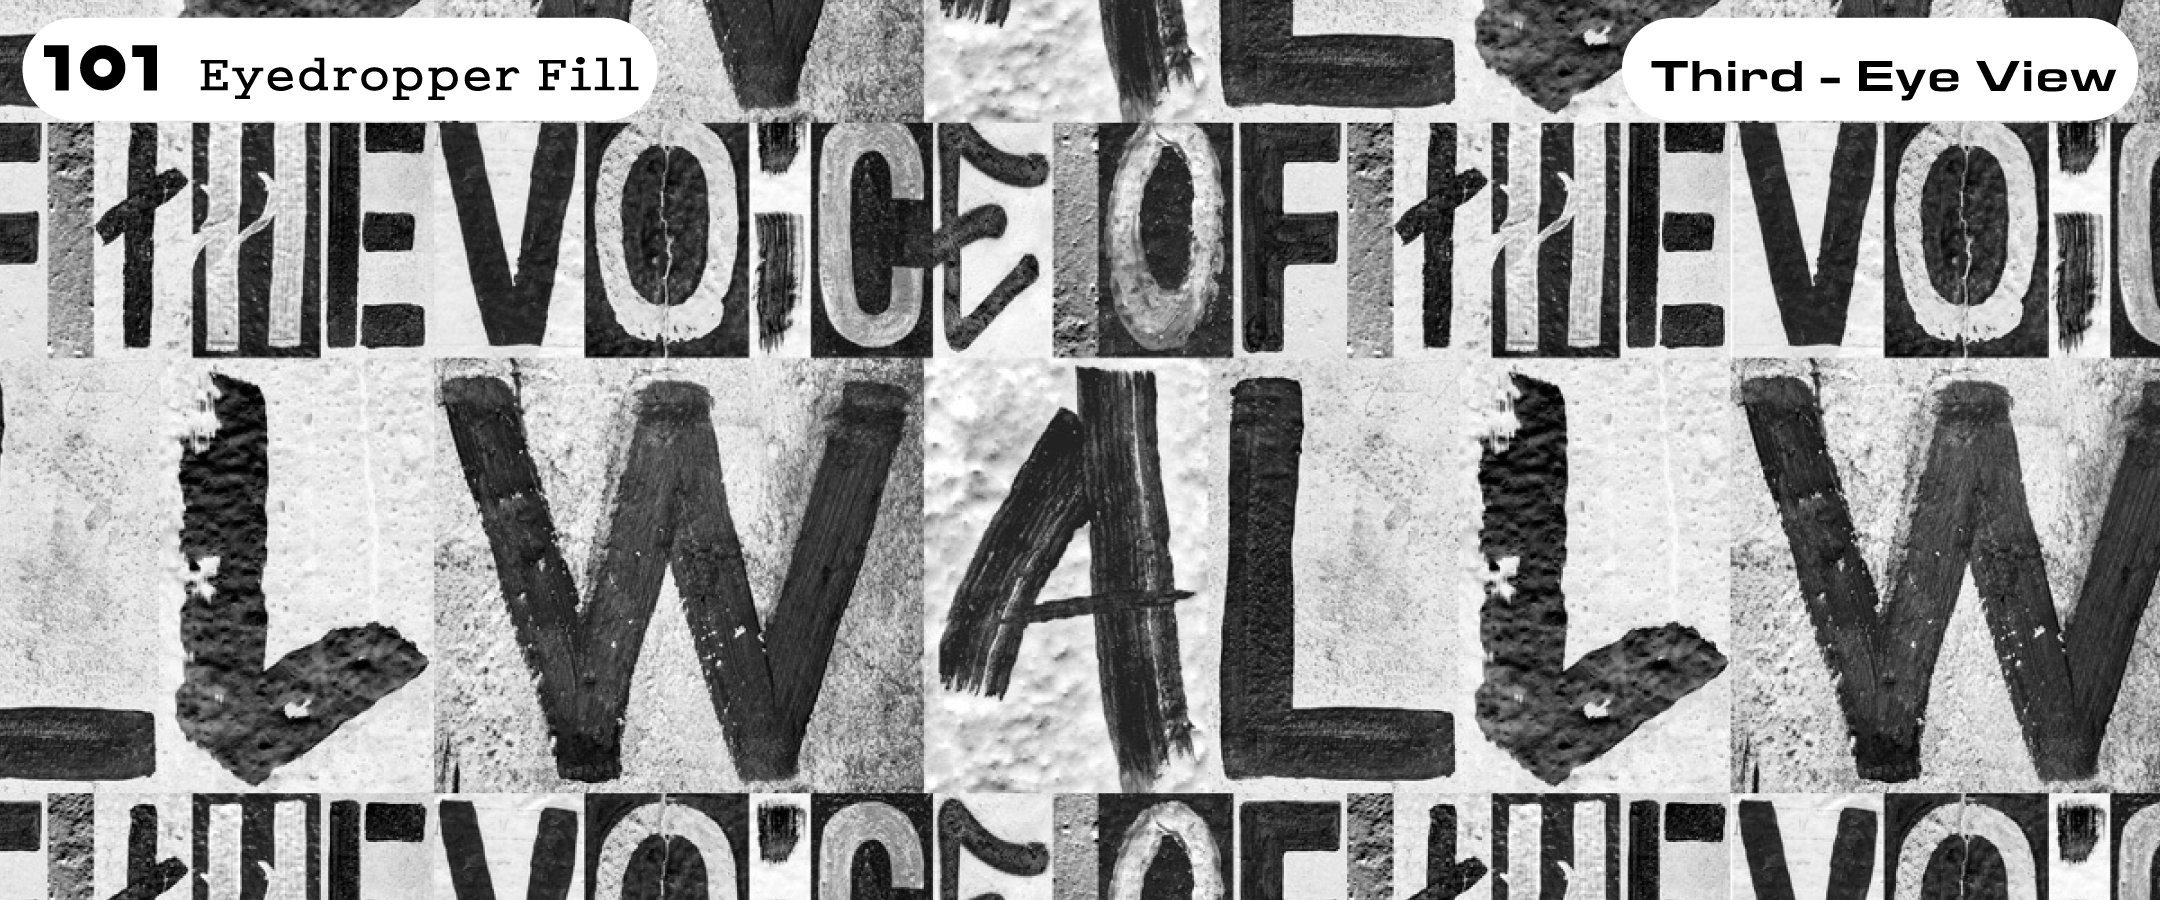 ‘Voice of the Wall’ ฟ้อนต์แห่งเสรีภาพ จากลายมือที่เคยฝากไว้บนกำแพงเบอร์ลิน